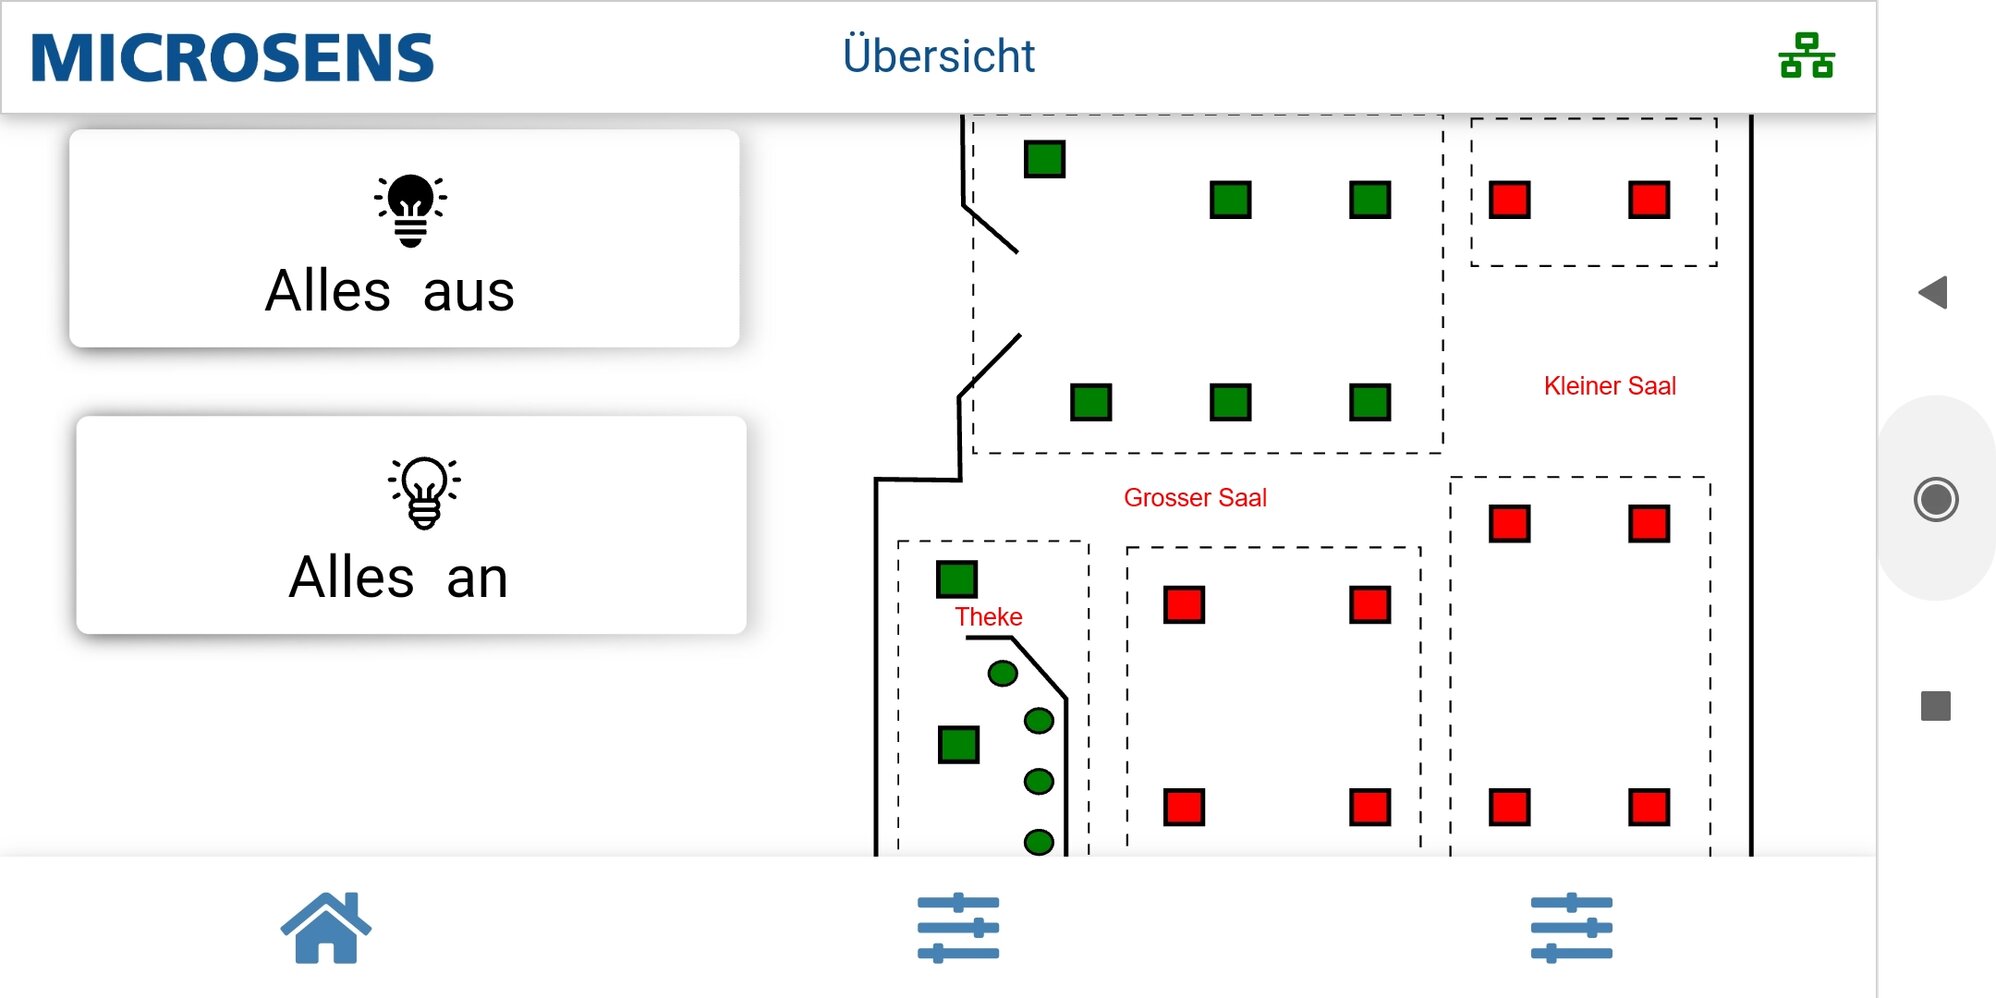 Abb. 1: Die LED-Panels im Vereinsheim des TuS Germania Lohauserholz-Daberg lassen sich einfach über eine zentrale Anwendung steuern. 